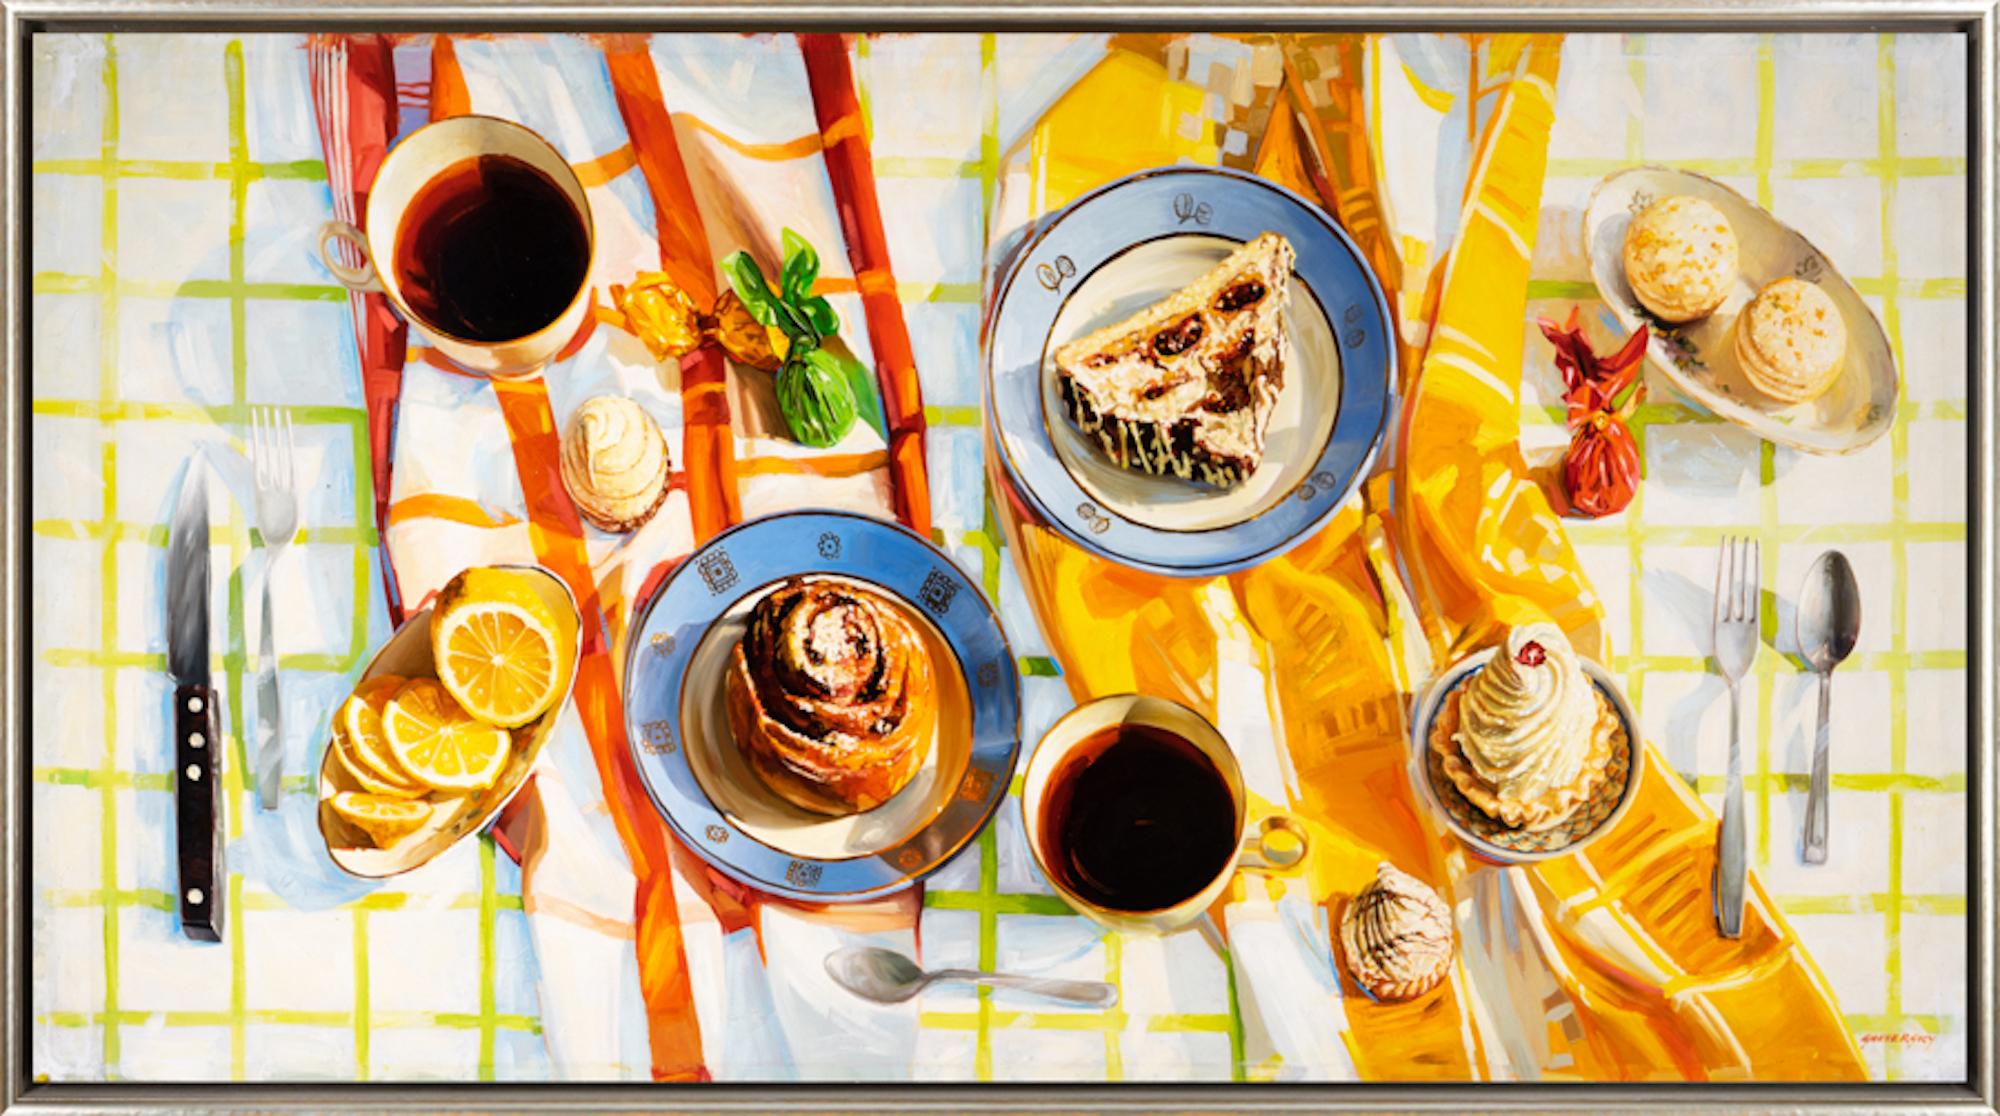 "Le petit-déjeuner" Peinture réaliste d'une nature morte de petit-déjeuner dans des tons chauds